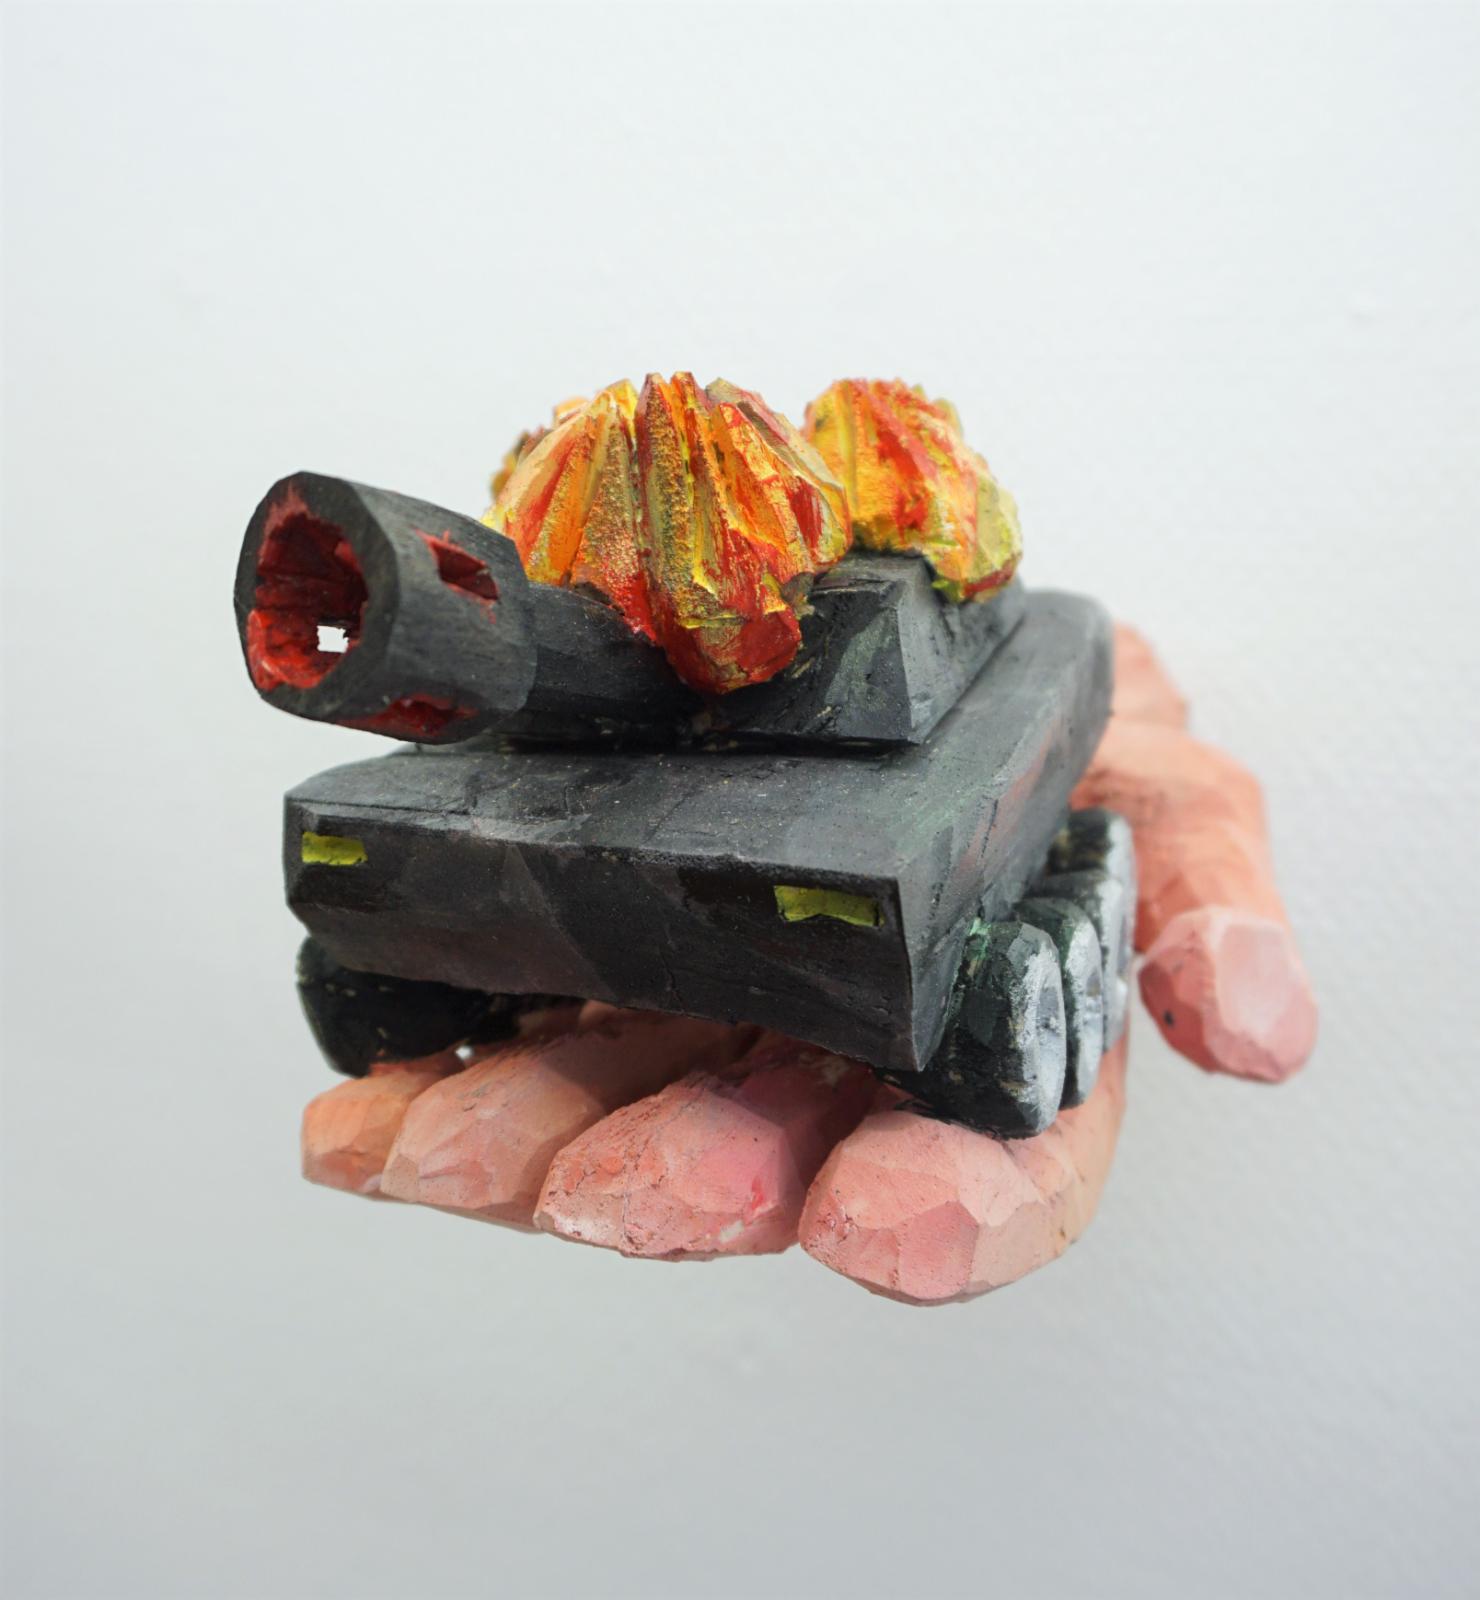 Daniel Wagenblast, handpanzer, 2018, Holz bemalt, 15 x 12 x 30 cm, Preis auf Anfrage, Galerie Cyprian Brenner